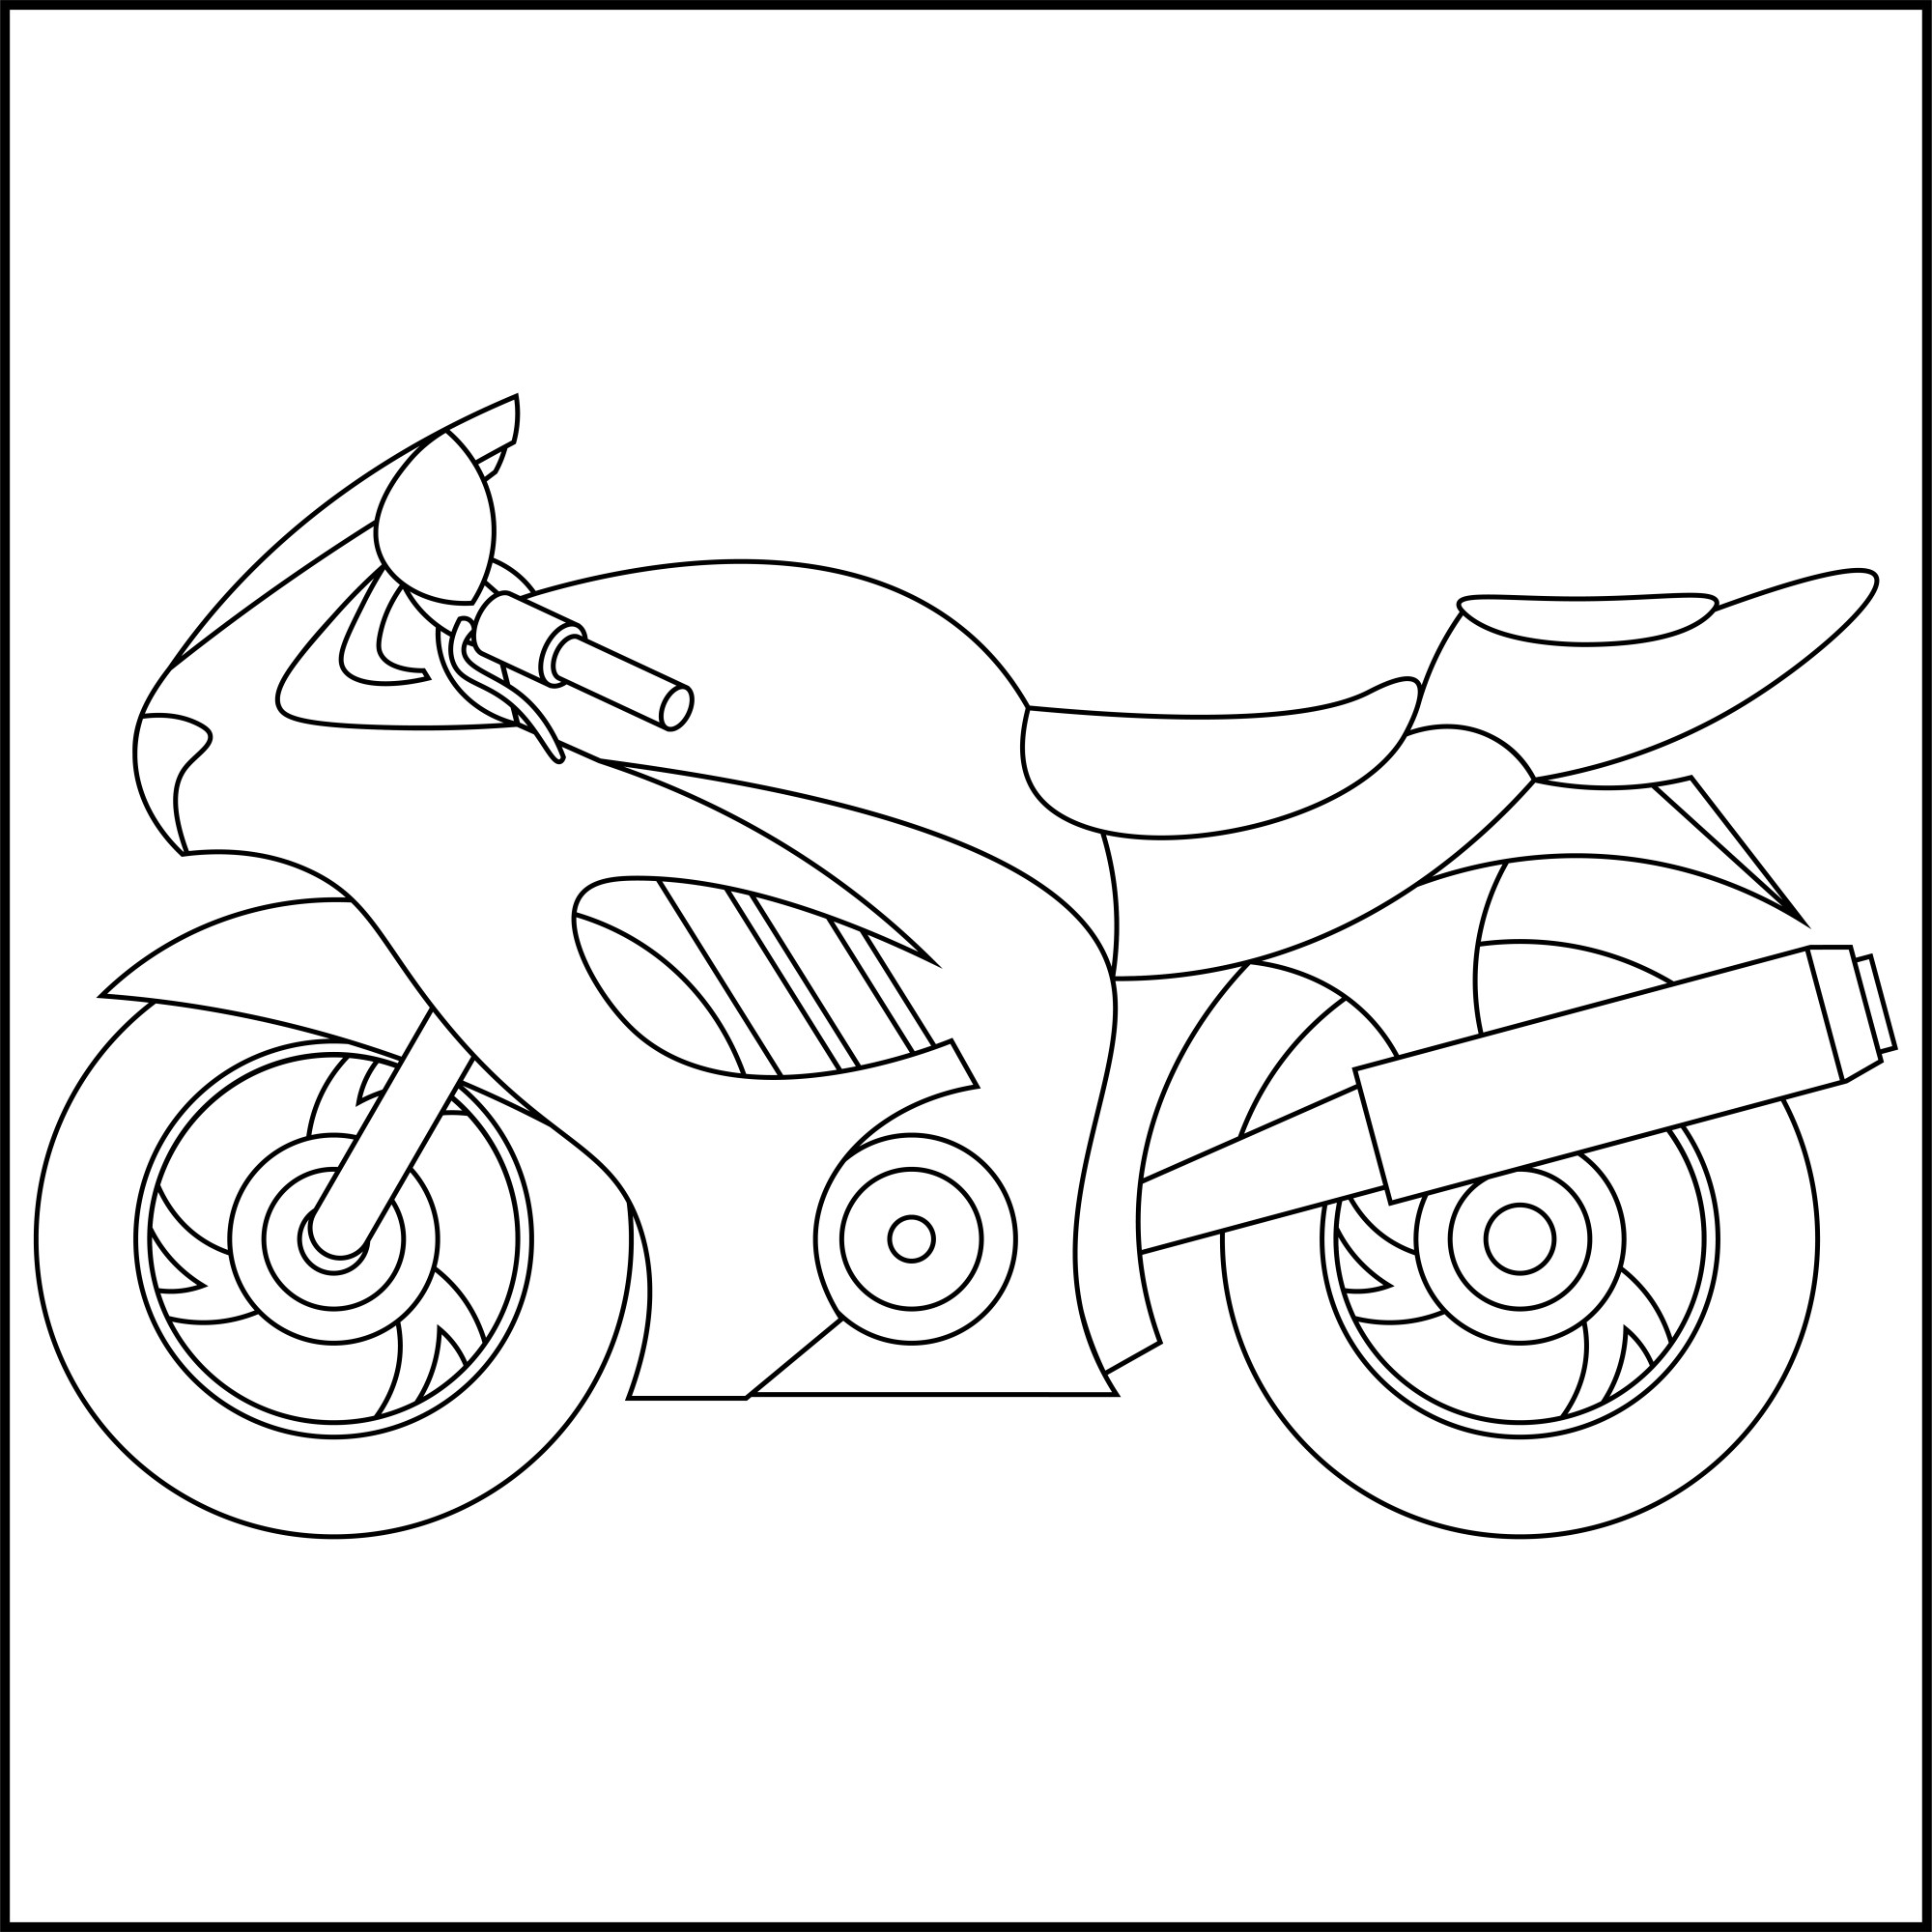 Раскраска для детей: быстрый мотоцикл «Кавасаки»